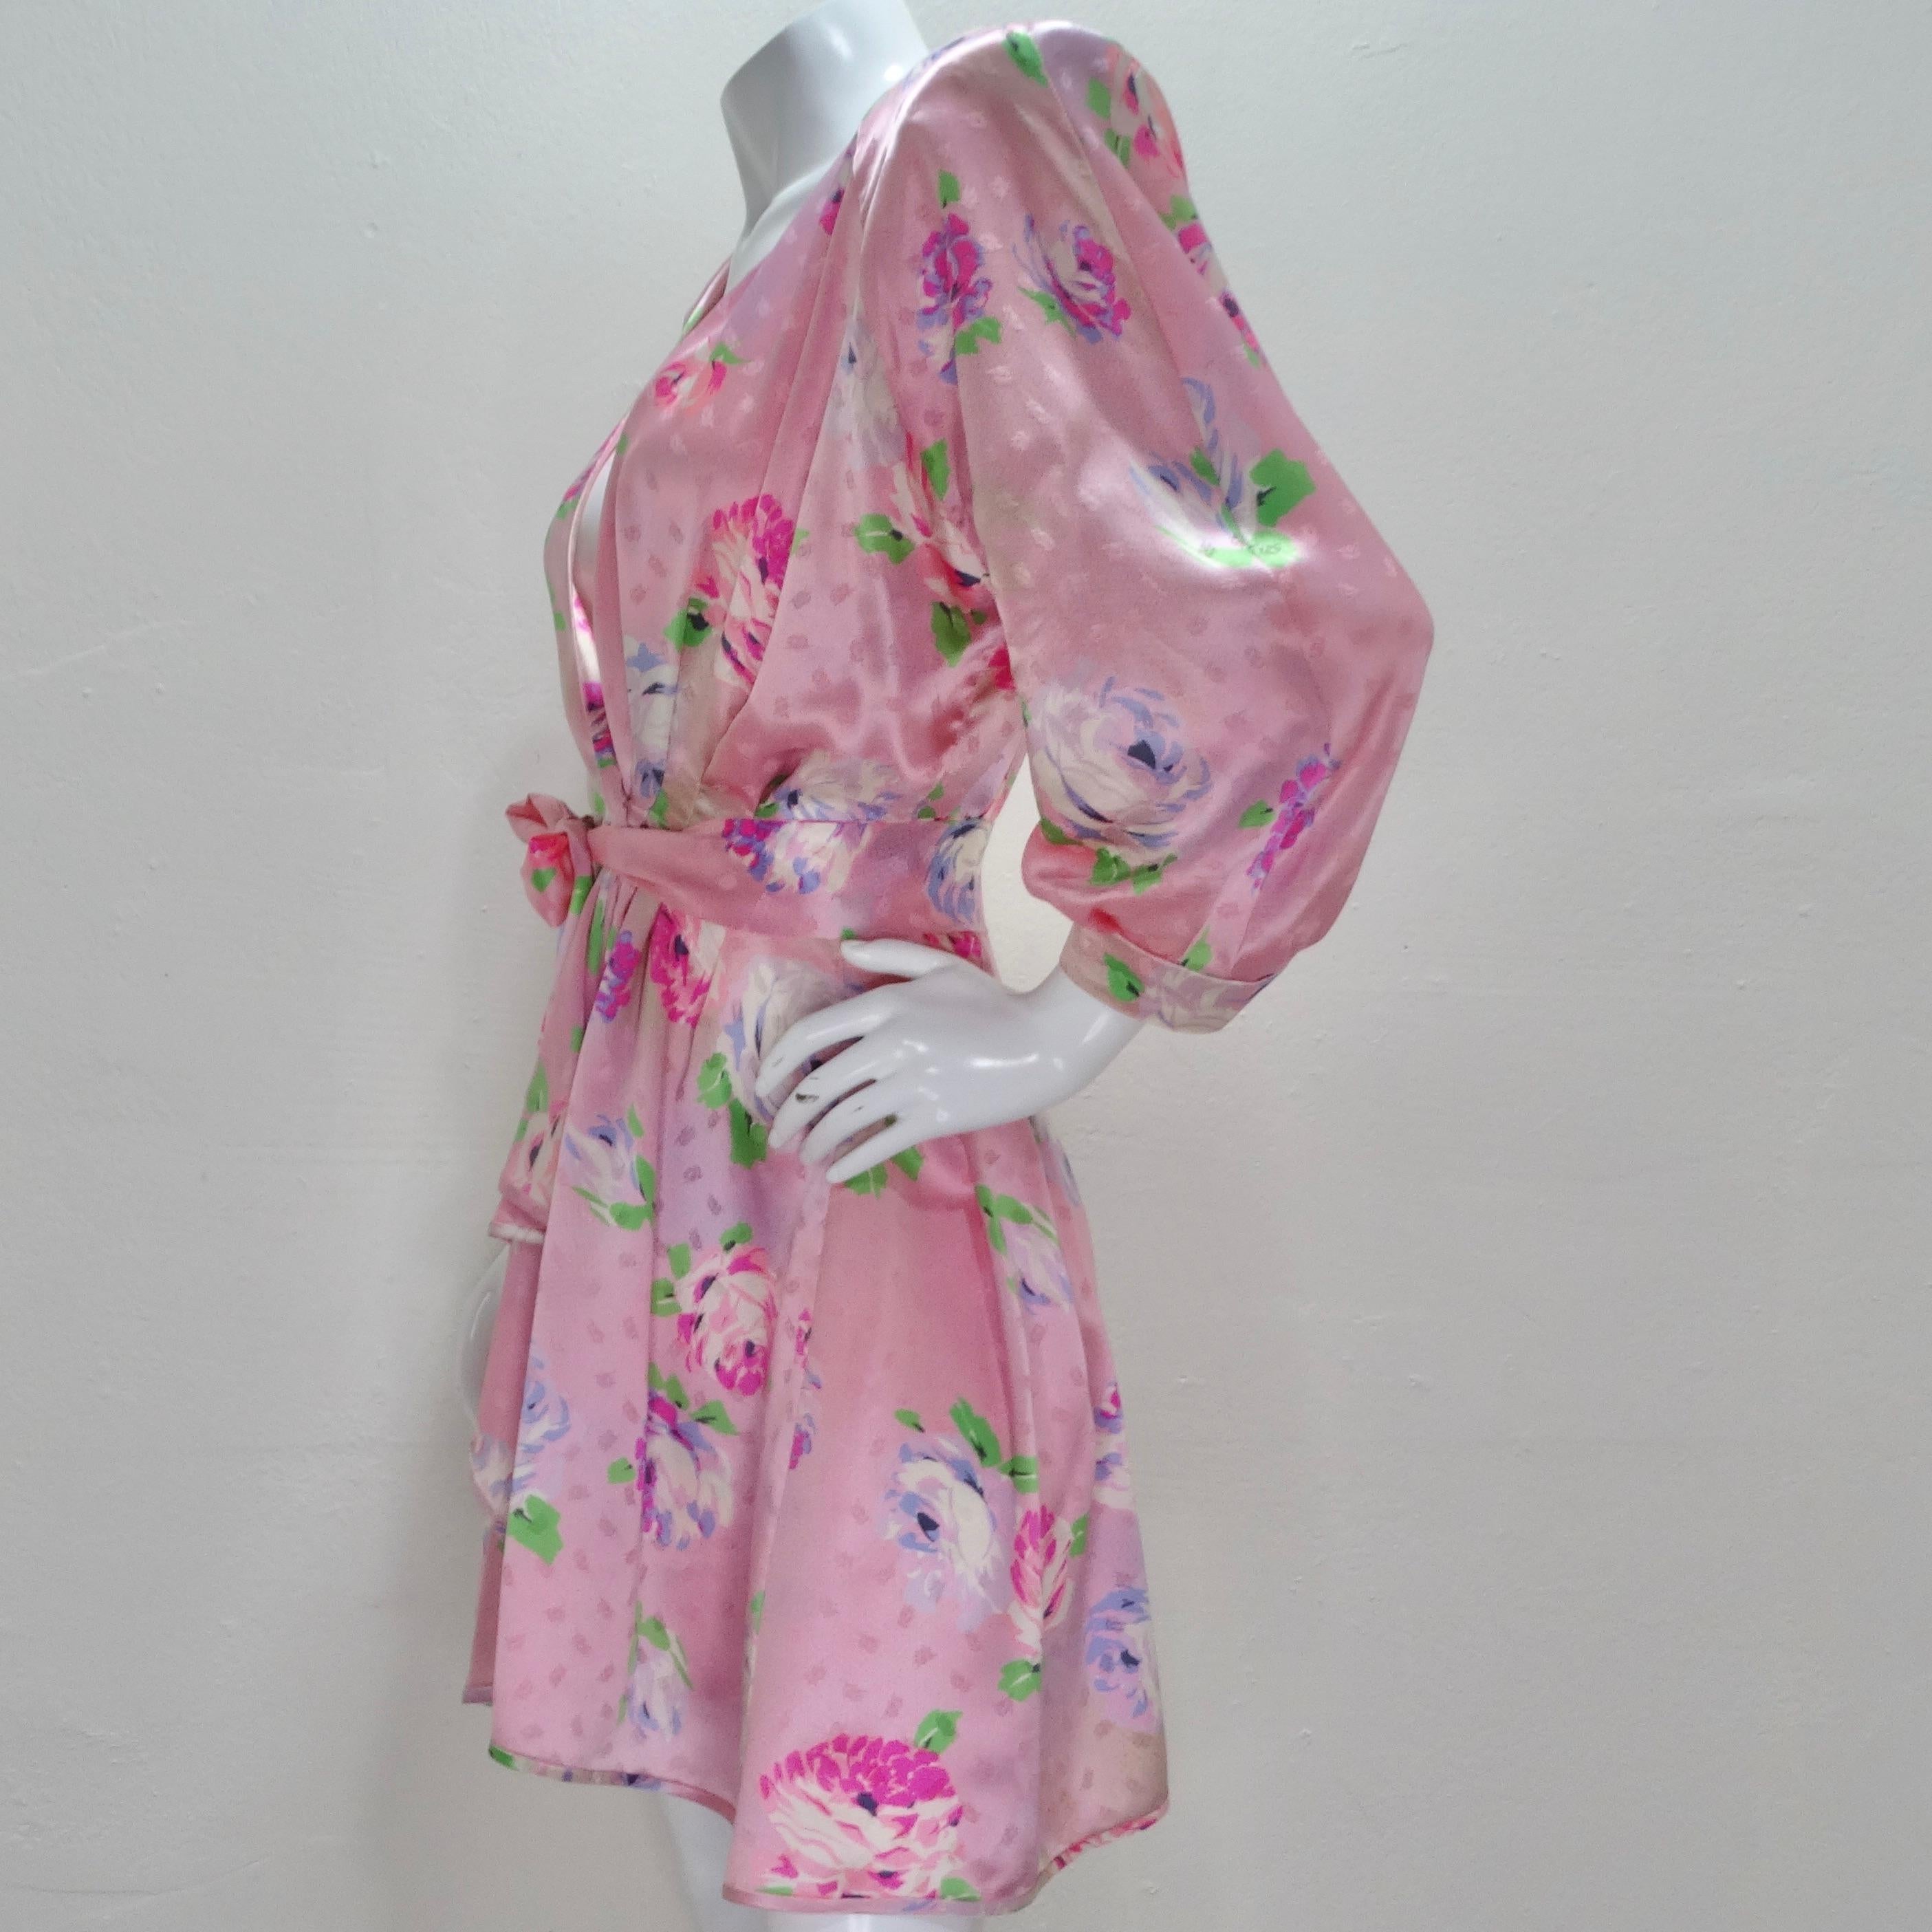 Emanuel Ungaro 1980s Pink Floral Wrap Dress For Sale 2